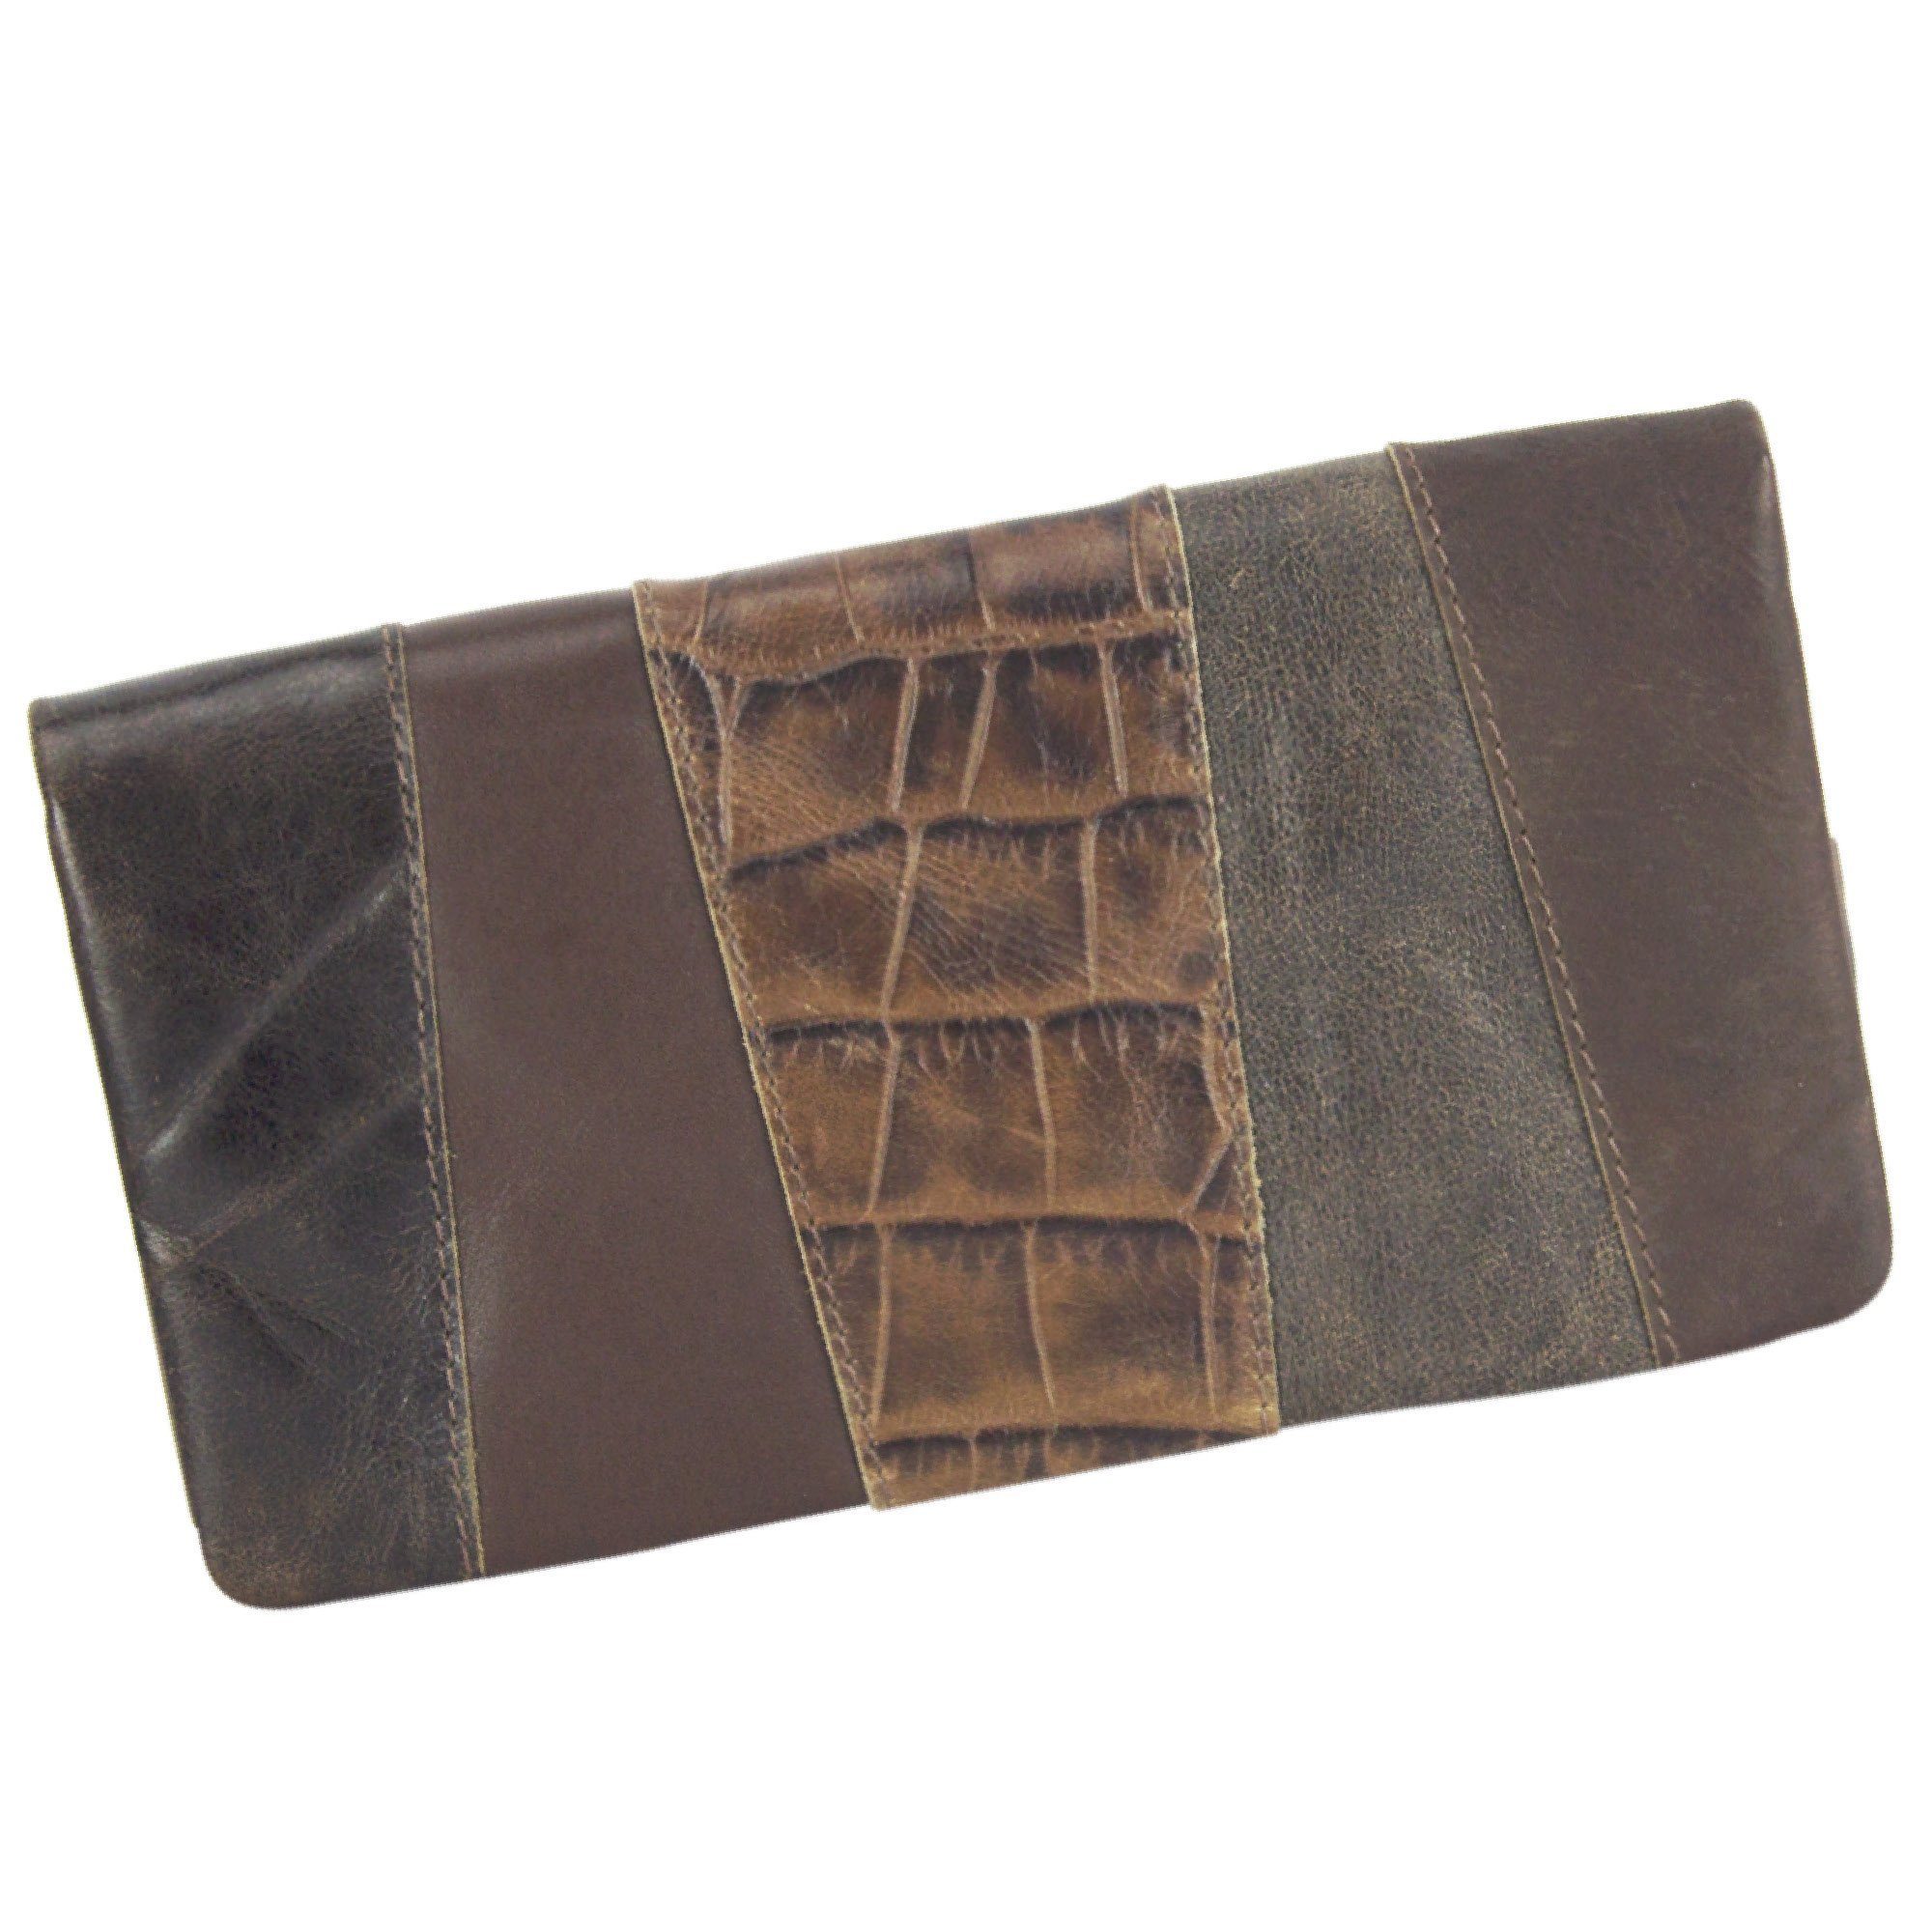 Sunsa Geldbörse Leder Geldbeutel große Brieftasche Portemonnaie, echt Leder, mit RFID-Schutz, Vintage Style, aus recycelten Lederresten dunkelbraun